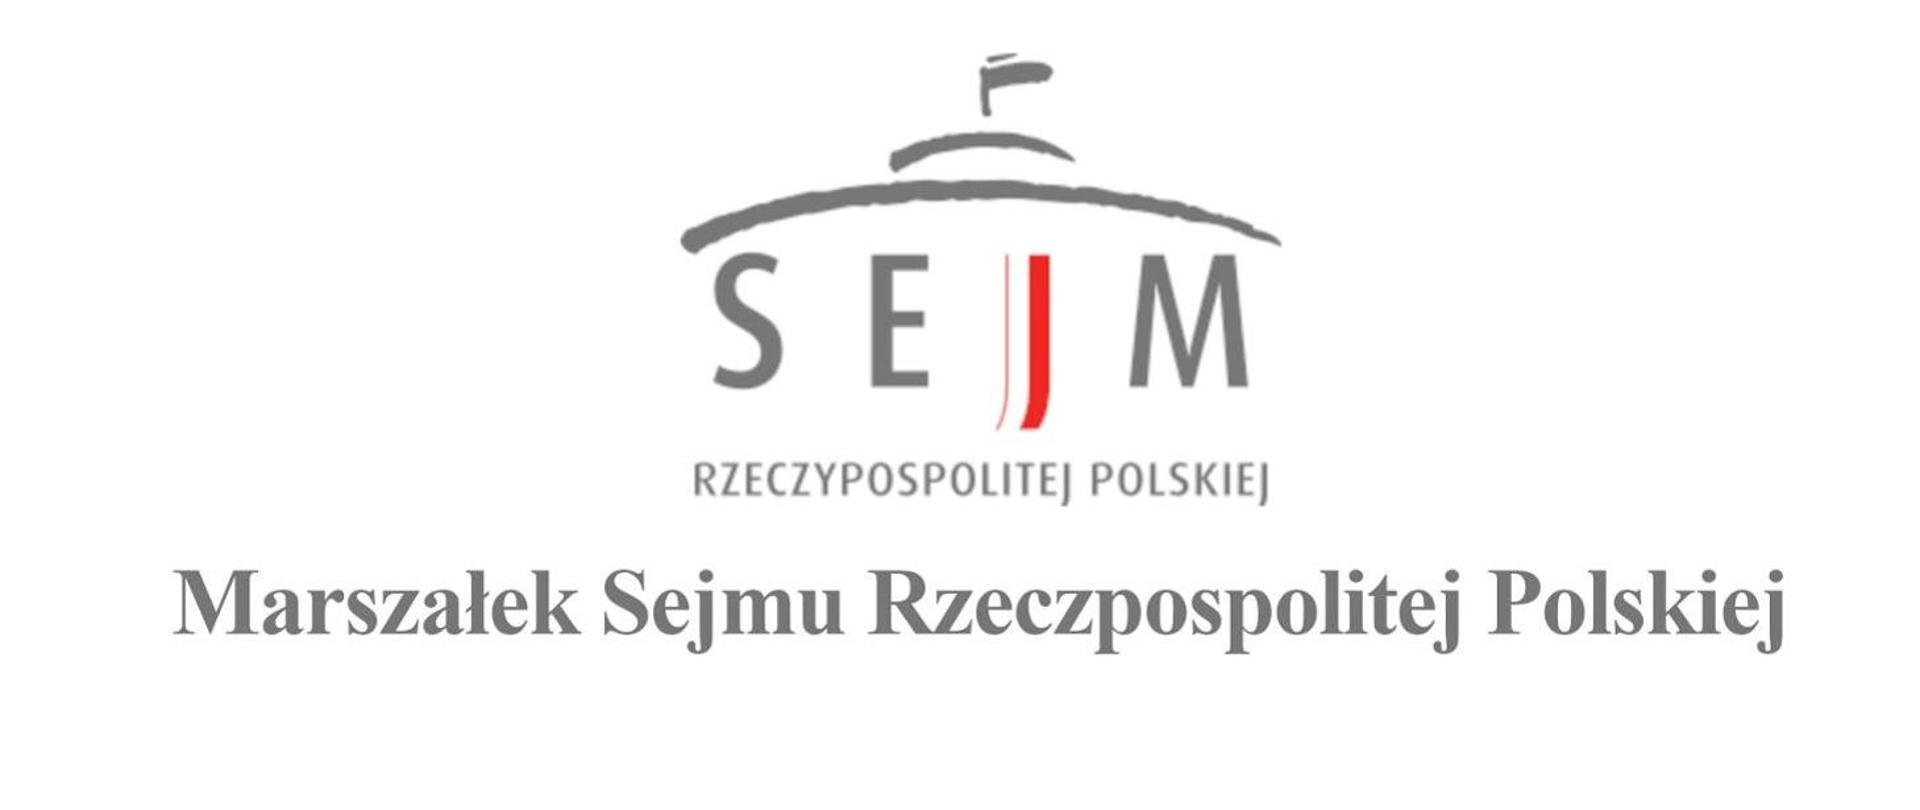 Logo Sejm Rzeczypospolitej Polskiej Marszałek Sejmu Rzeczypospolitej Polskiej.